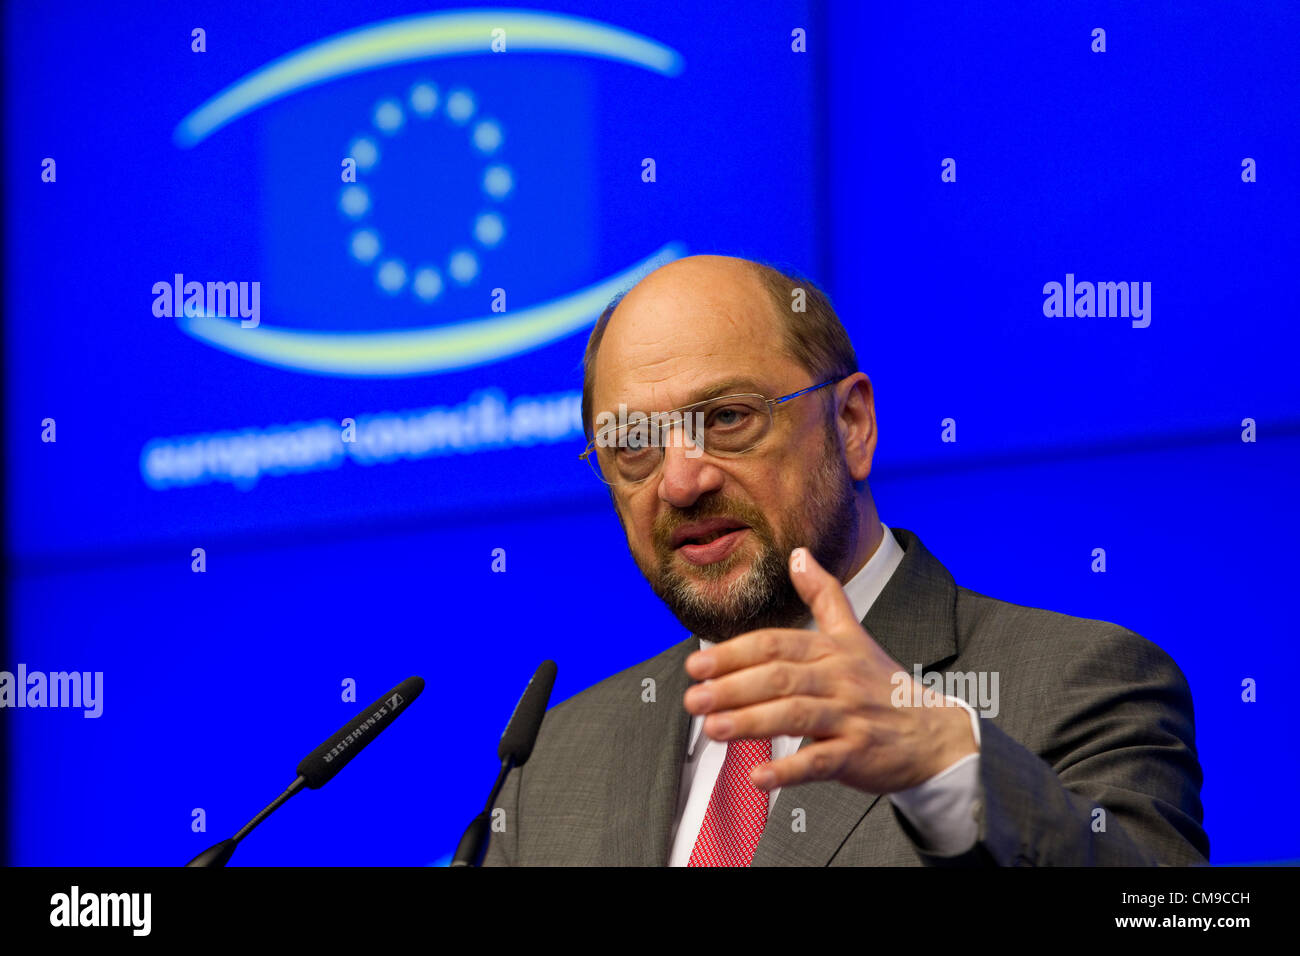 Bruxelles, Belgio. 28 Giugno, 2012. Immagine mostra Martin Schulz, Presidente del Parlamento europeo, al vertice UE, Justus Lipsius a Bruxelles. Foto Stock